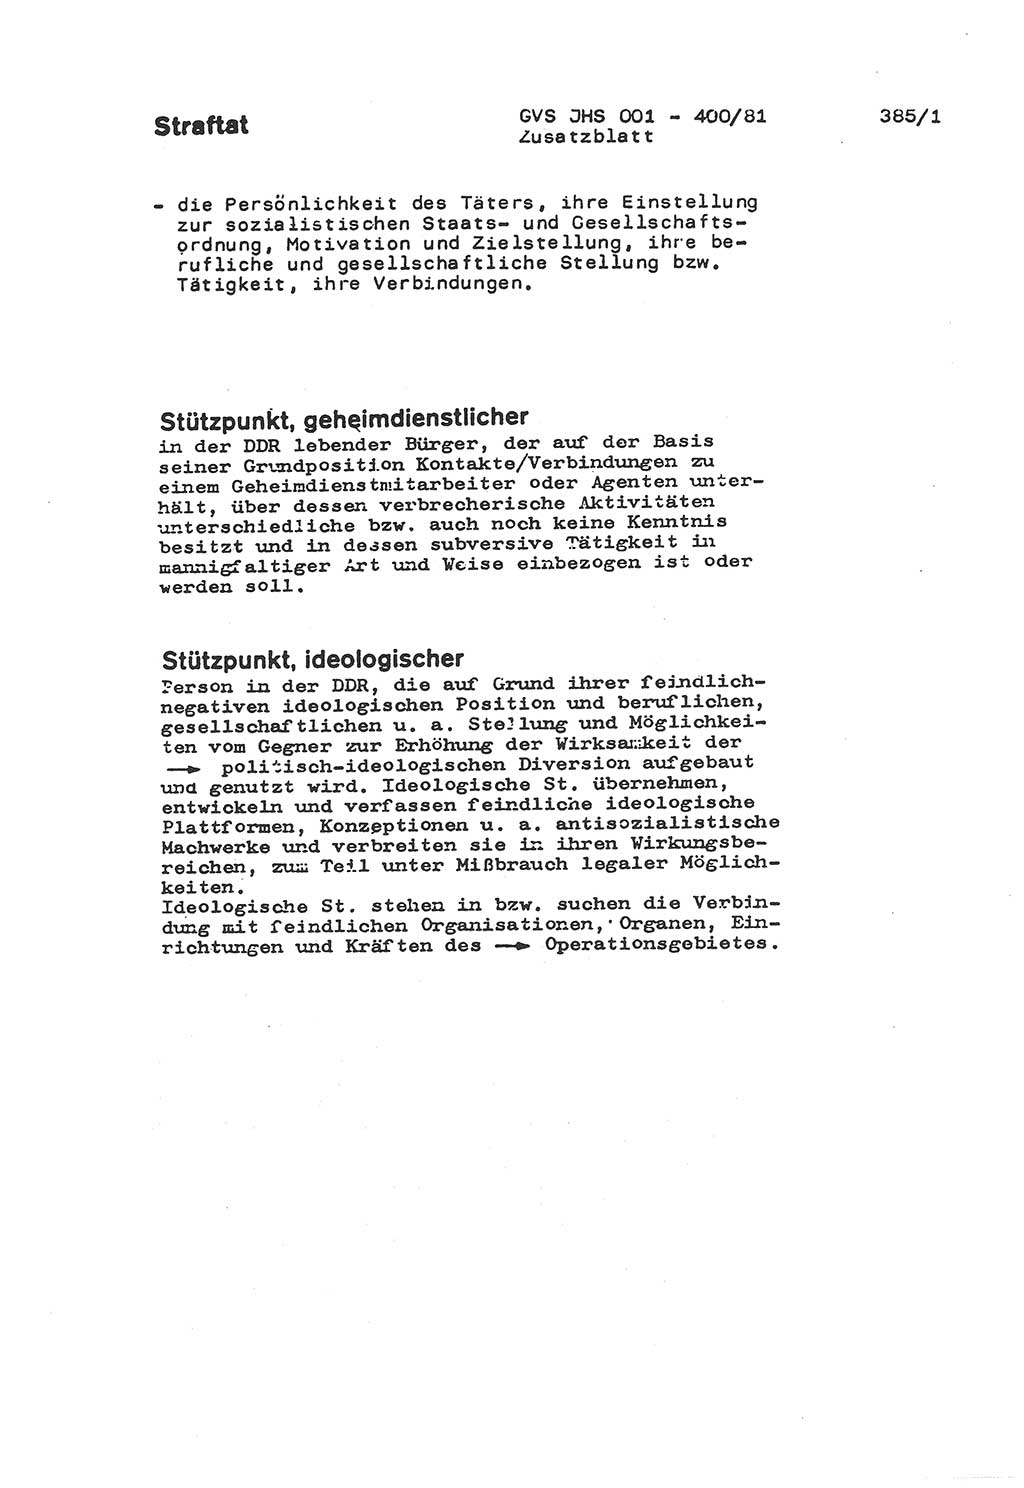 Wörterbuch der politisch-operativen Arbeit, Ministerium für Staatssicherheit (MfS) [Deutsche Demokratische Republik (DDR)], Juristische Hochschule (JHS), Geheime Verschlußsache (GVS) o001-400/81, Potsdam 1985, Blatt 385/1 (Wb. pol.-op. Arb. MfS DDR JHS GVS o001-400/81 1985, Bl. 385/1)